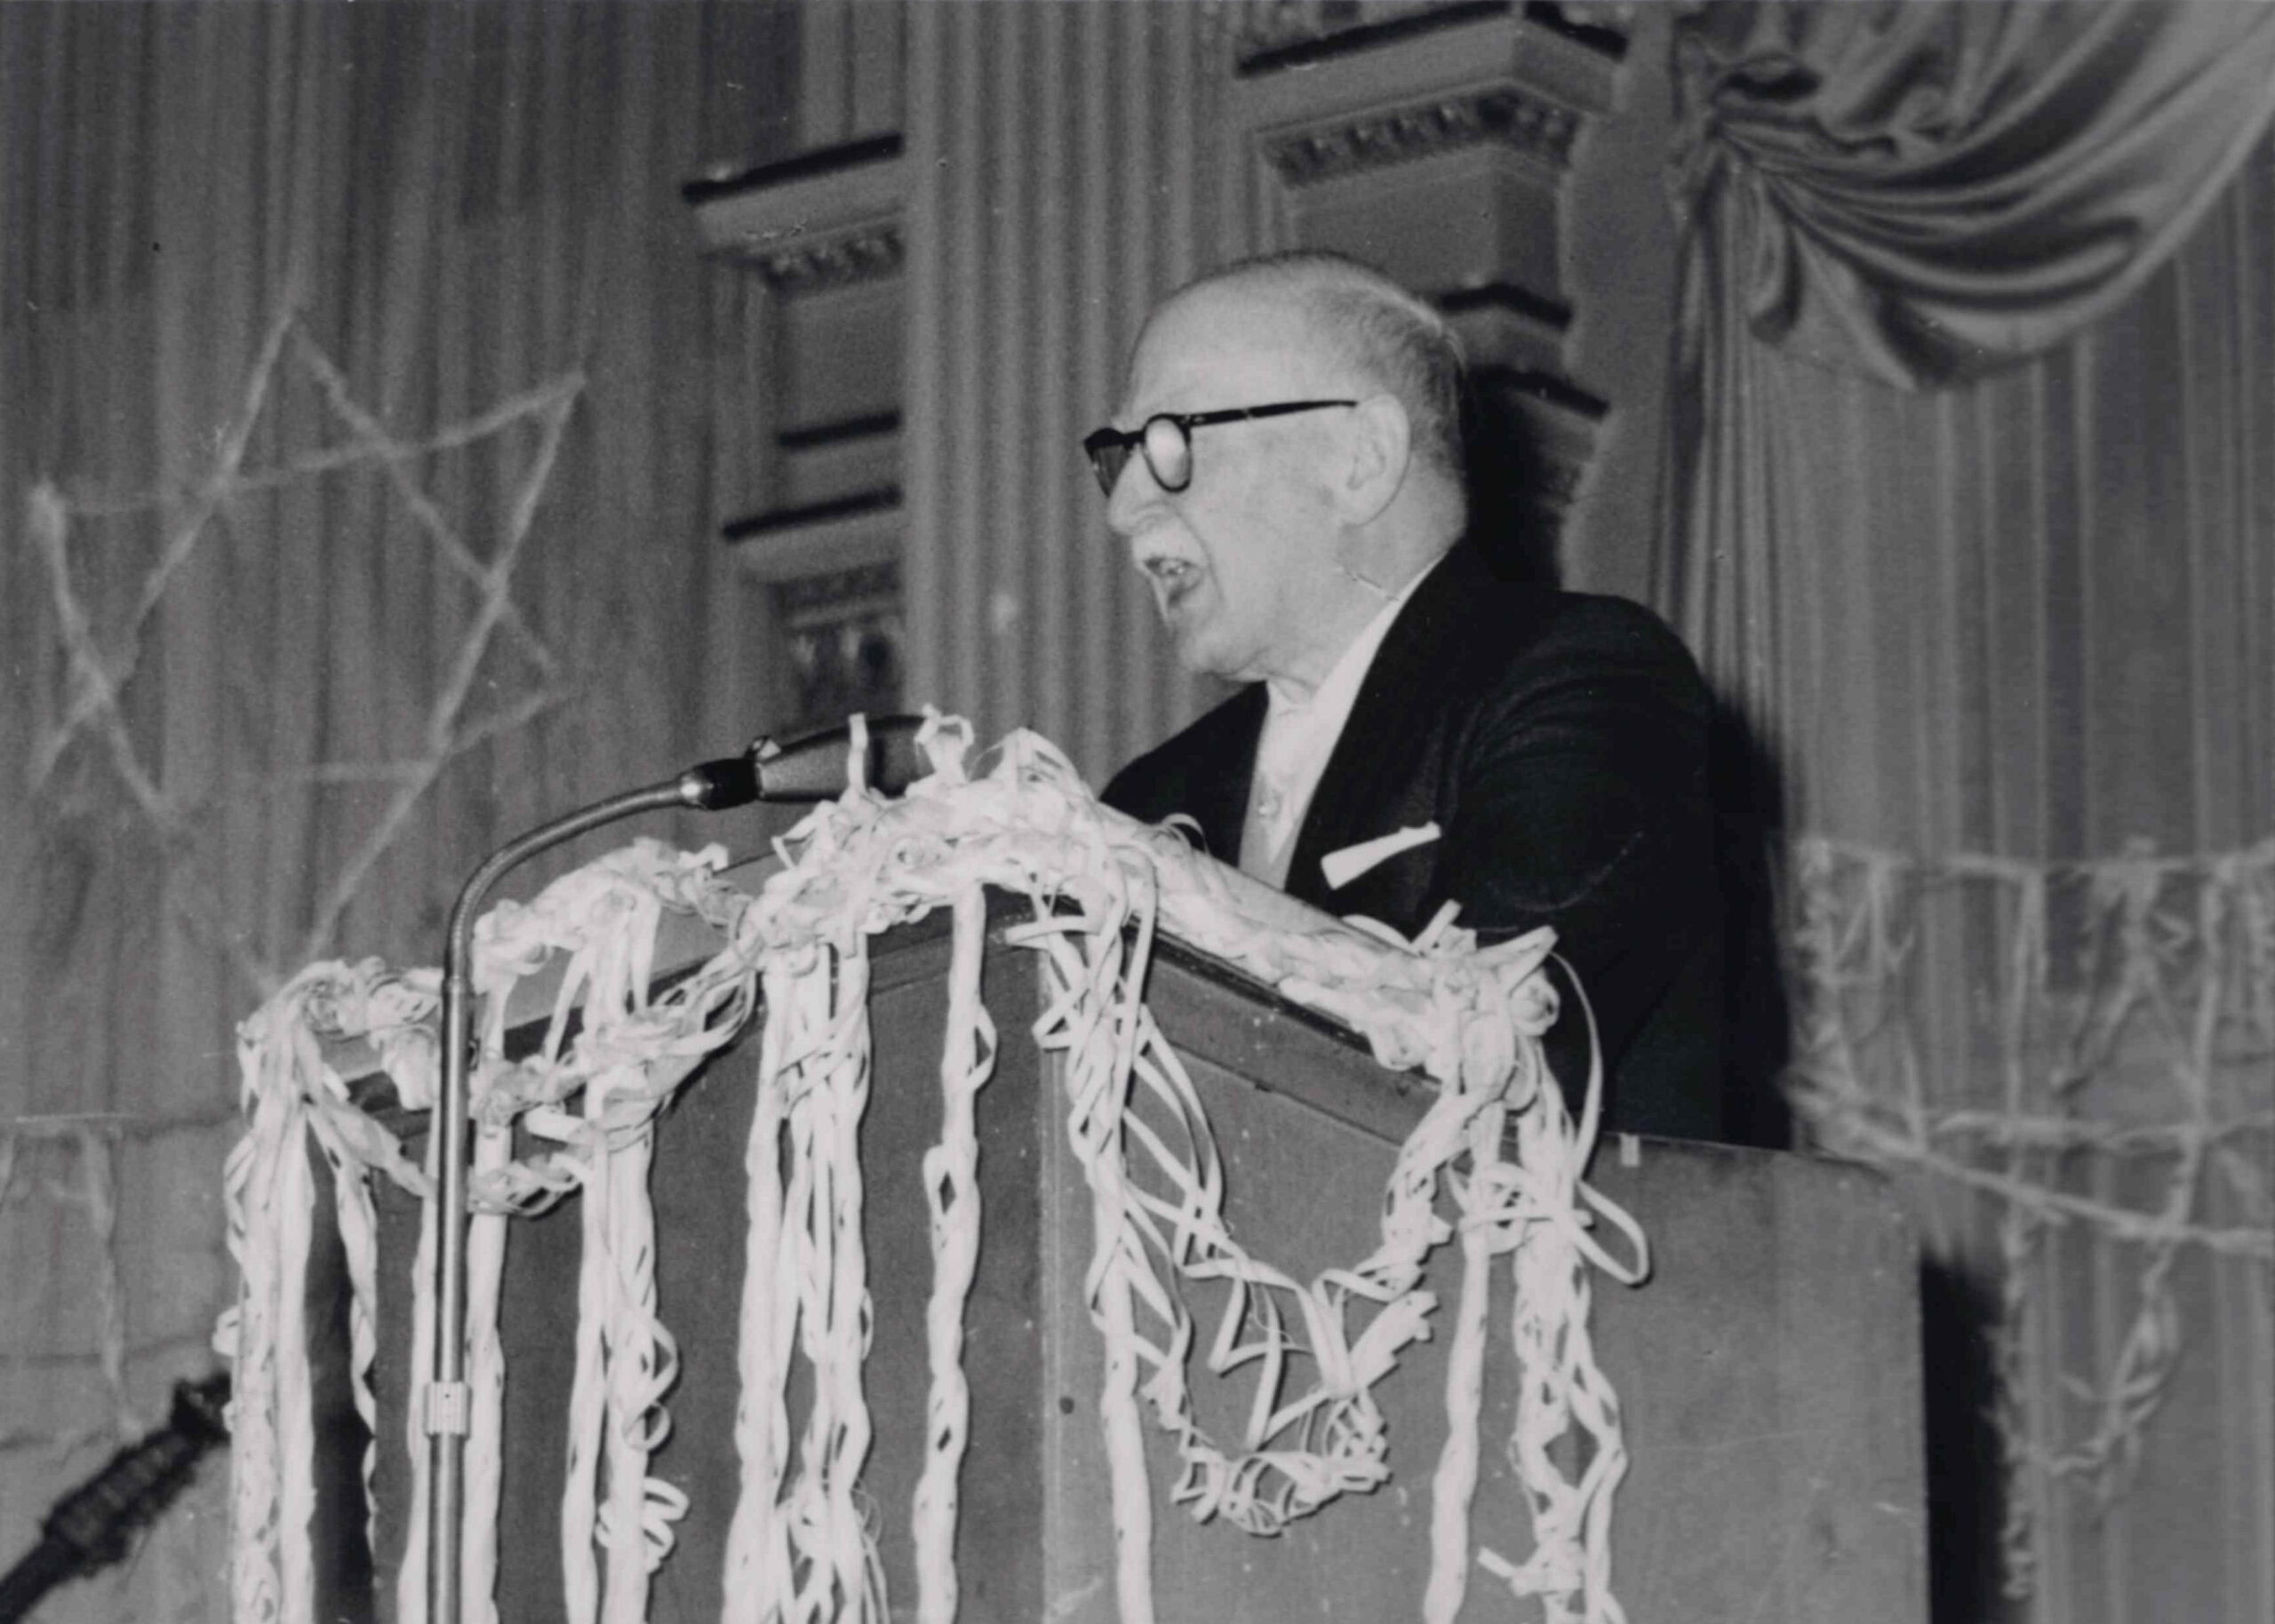 Д-р Фридрих Райхман, председатель еврейской общины Висбадена, на одном из мероприятий общины около 1963 г. Коллекция Еврейская община Висбадена